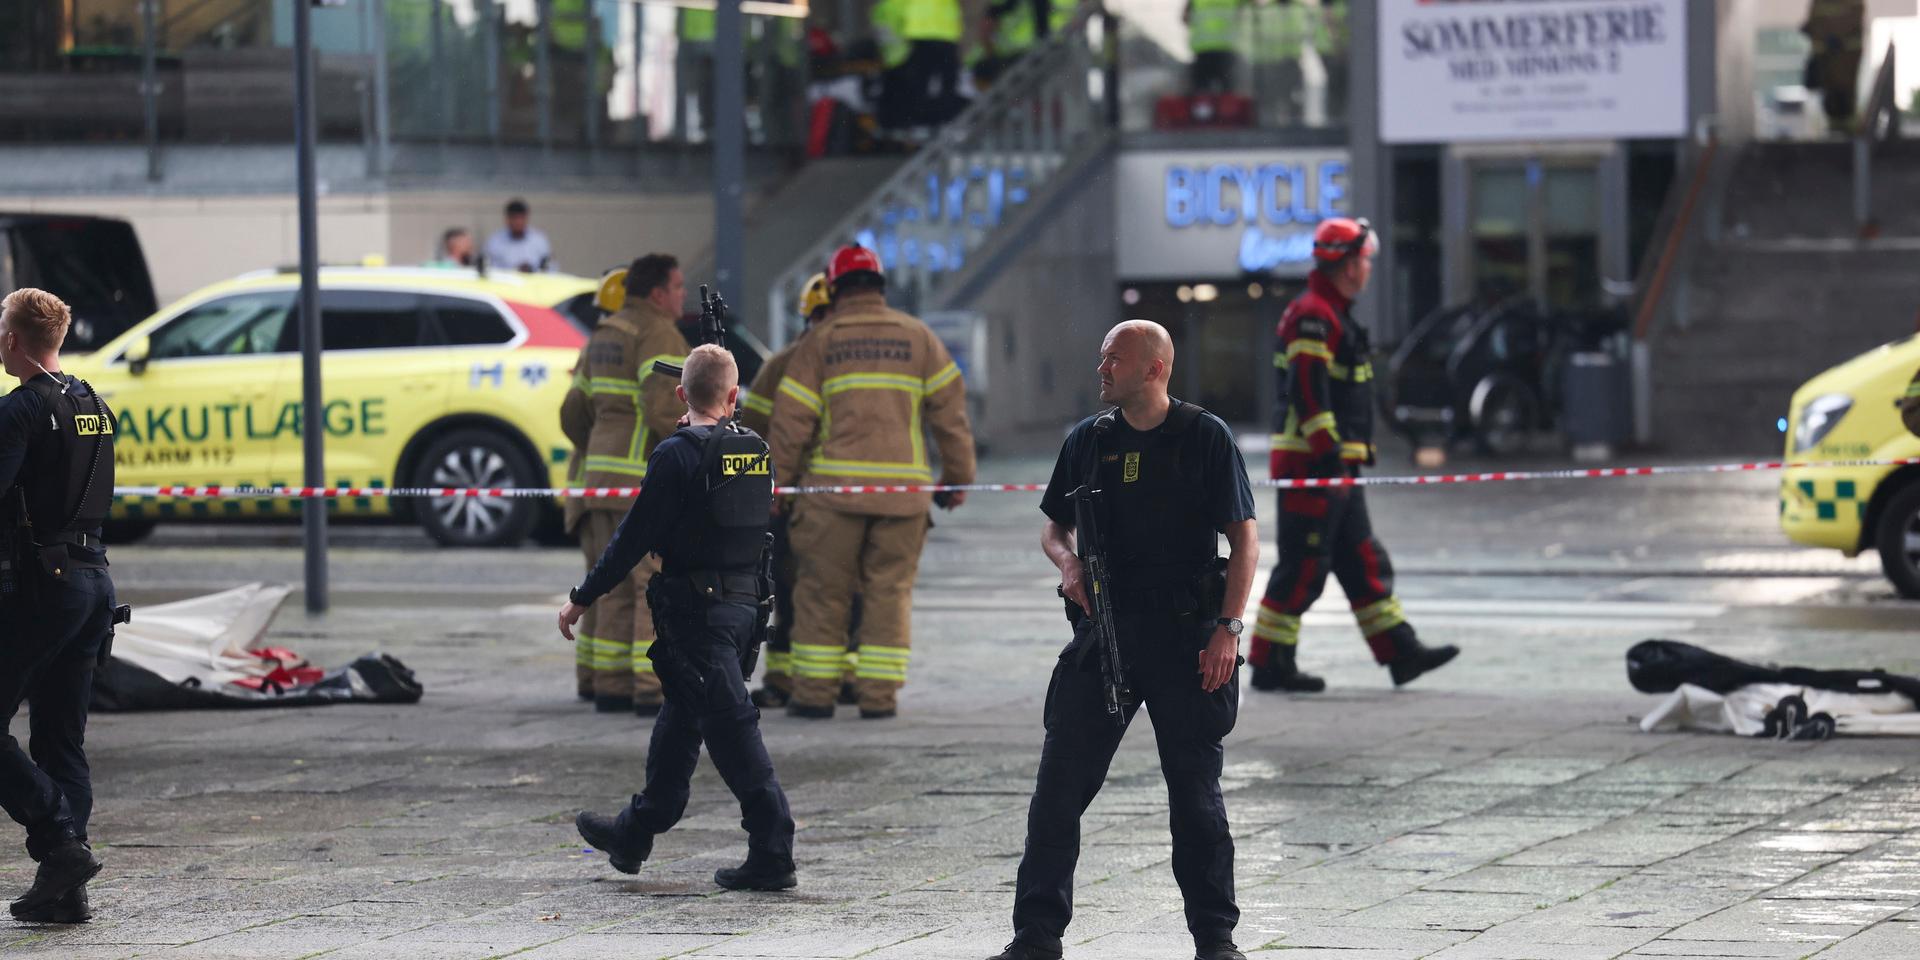 Polis och räddningsfordon i närheten av det köpcentrum där flera personer sköts ihjäl på söndagskvällen vid en skottlossning på ett köpcentrum i Köpenhamn.